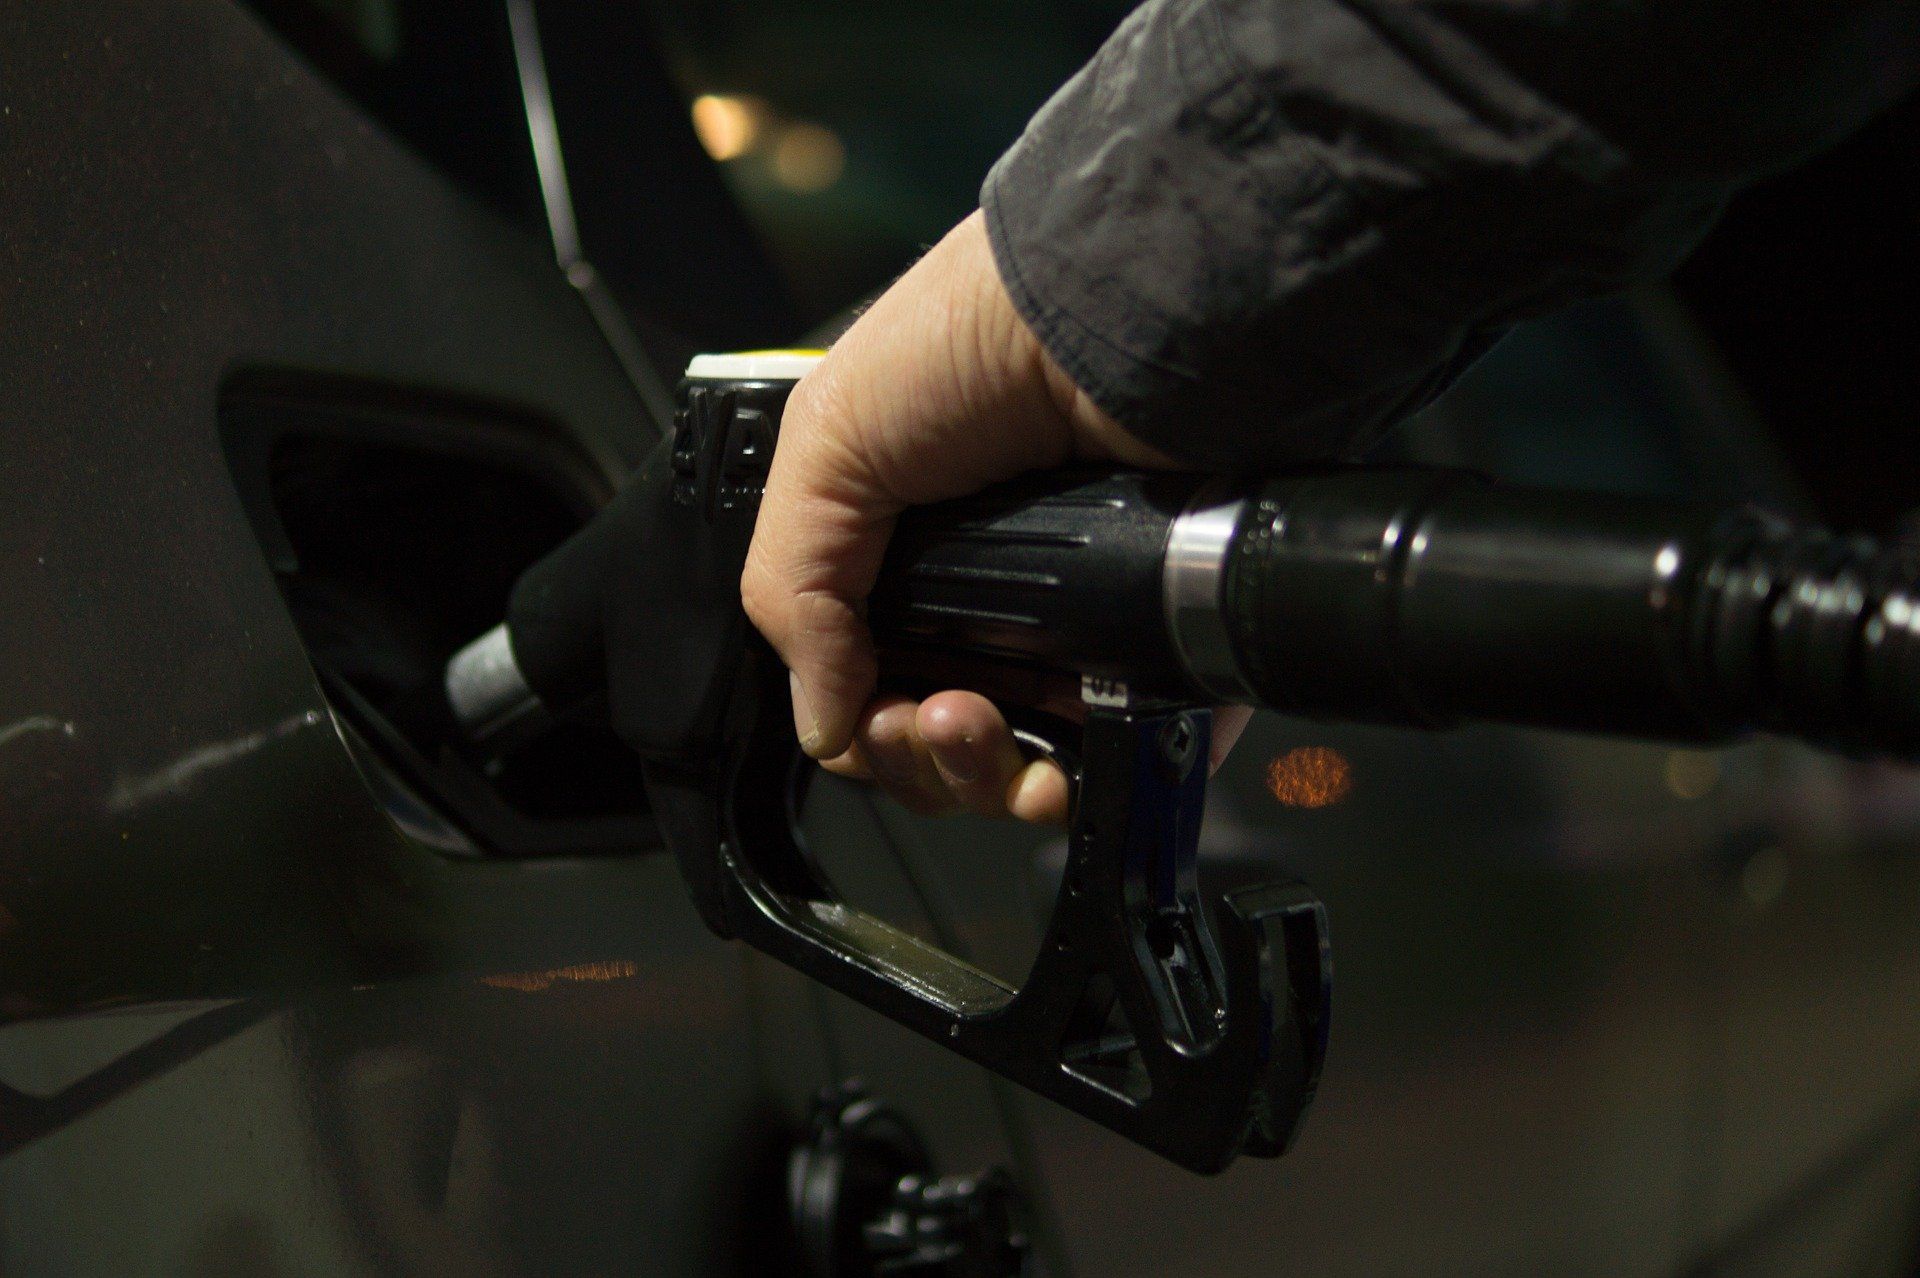 Fuel price June 2, 2022: Petrol Rs 96.72, diesel Rs 89.62 in Delhi